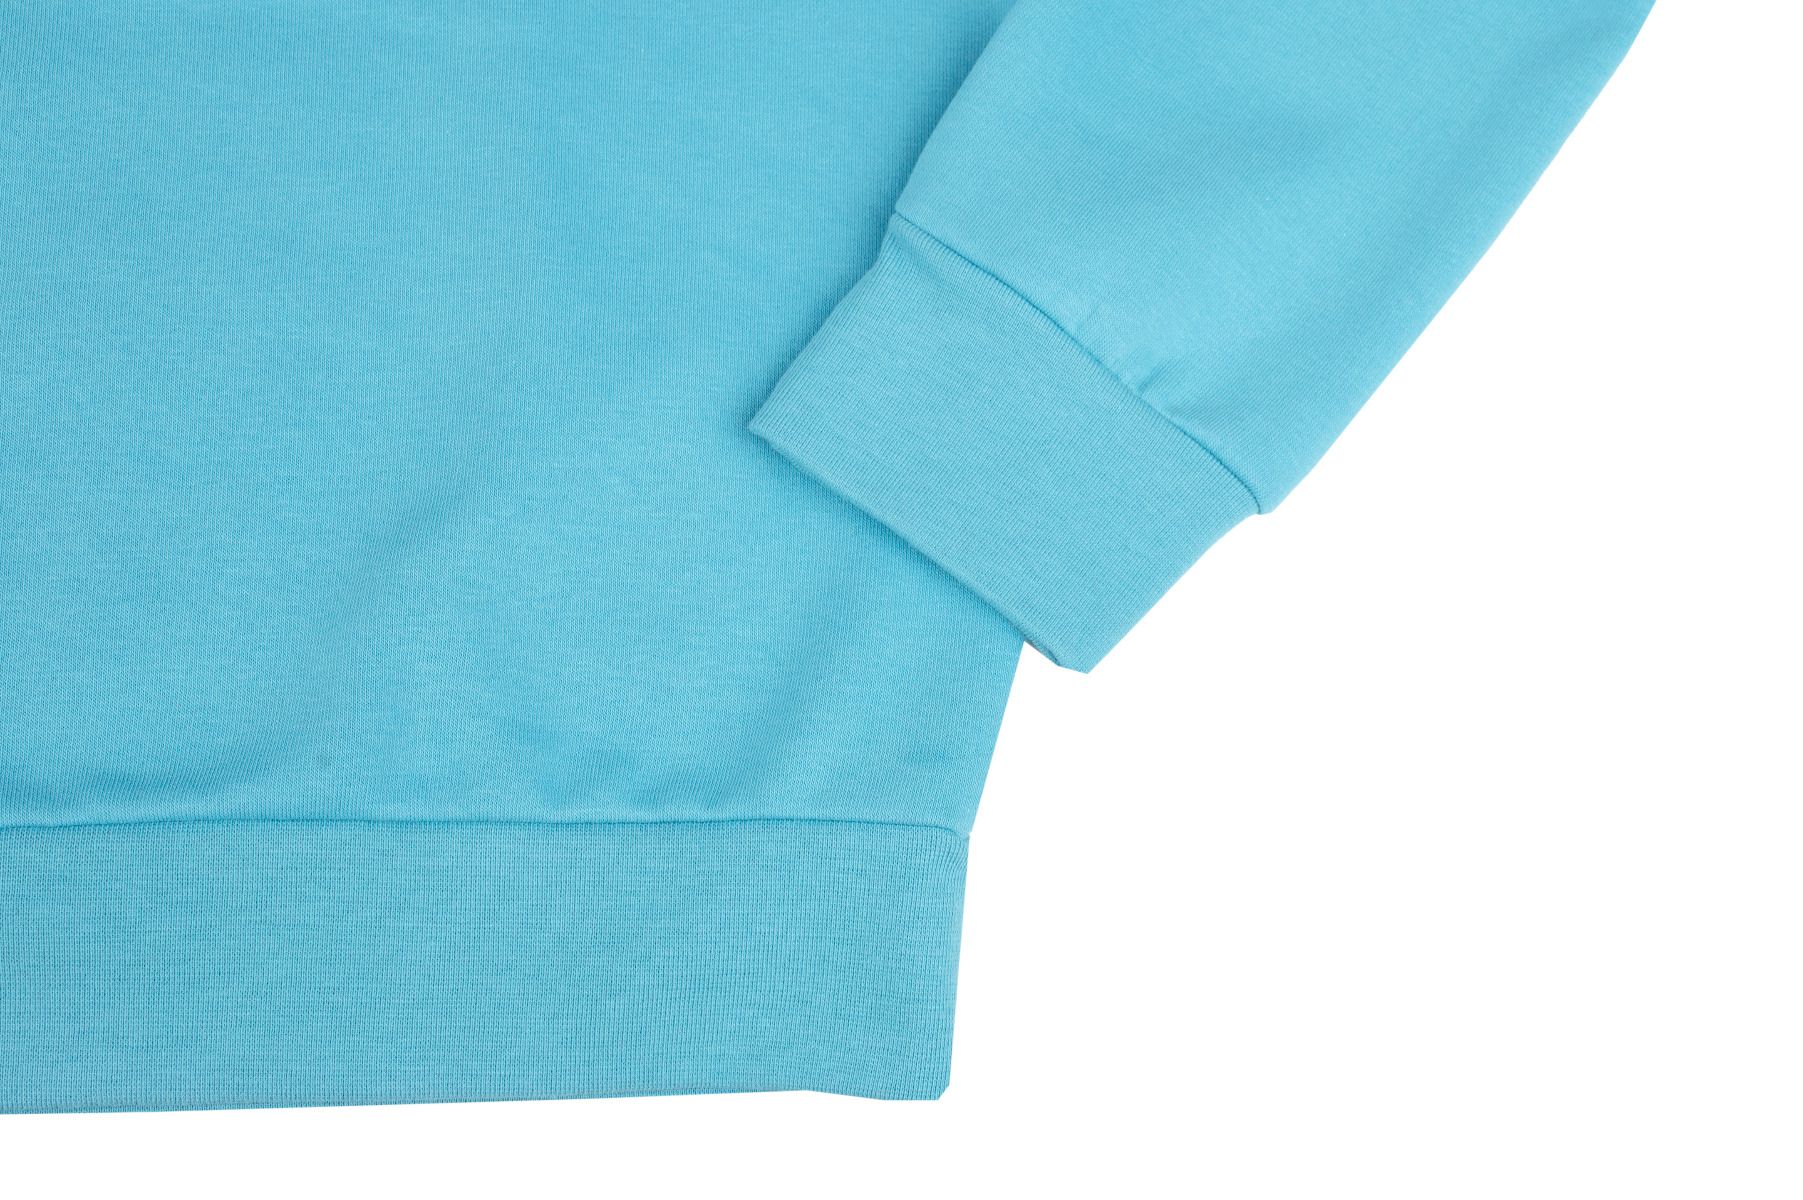 adidas Bluză Bărbați Essentials Fleece Sweatshirt H47023